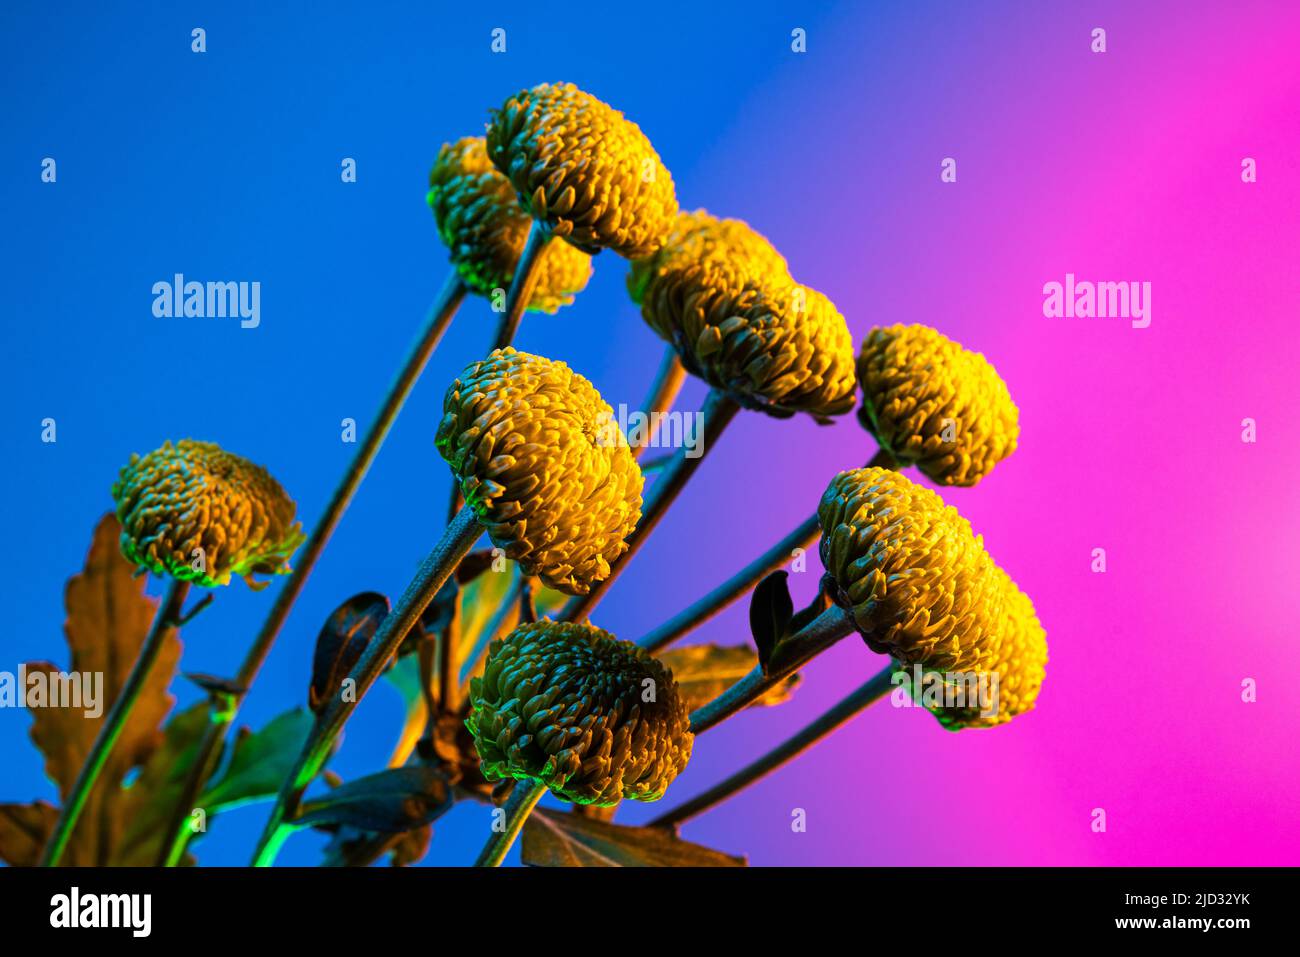 Fleurs vivantes, composition florale créative sur fond bleu et rose à la lumière du néon. Concept de fleuriste, décorations, créativité, décor Banque D'Images